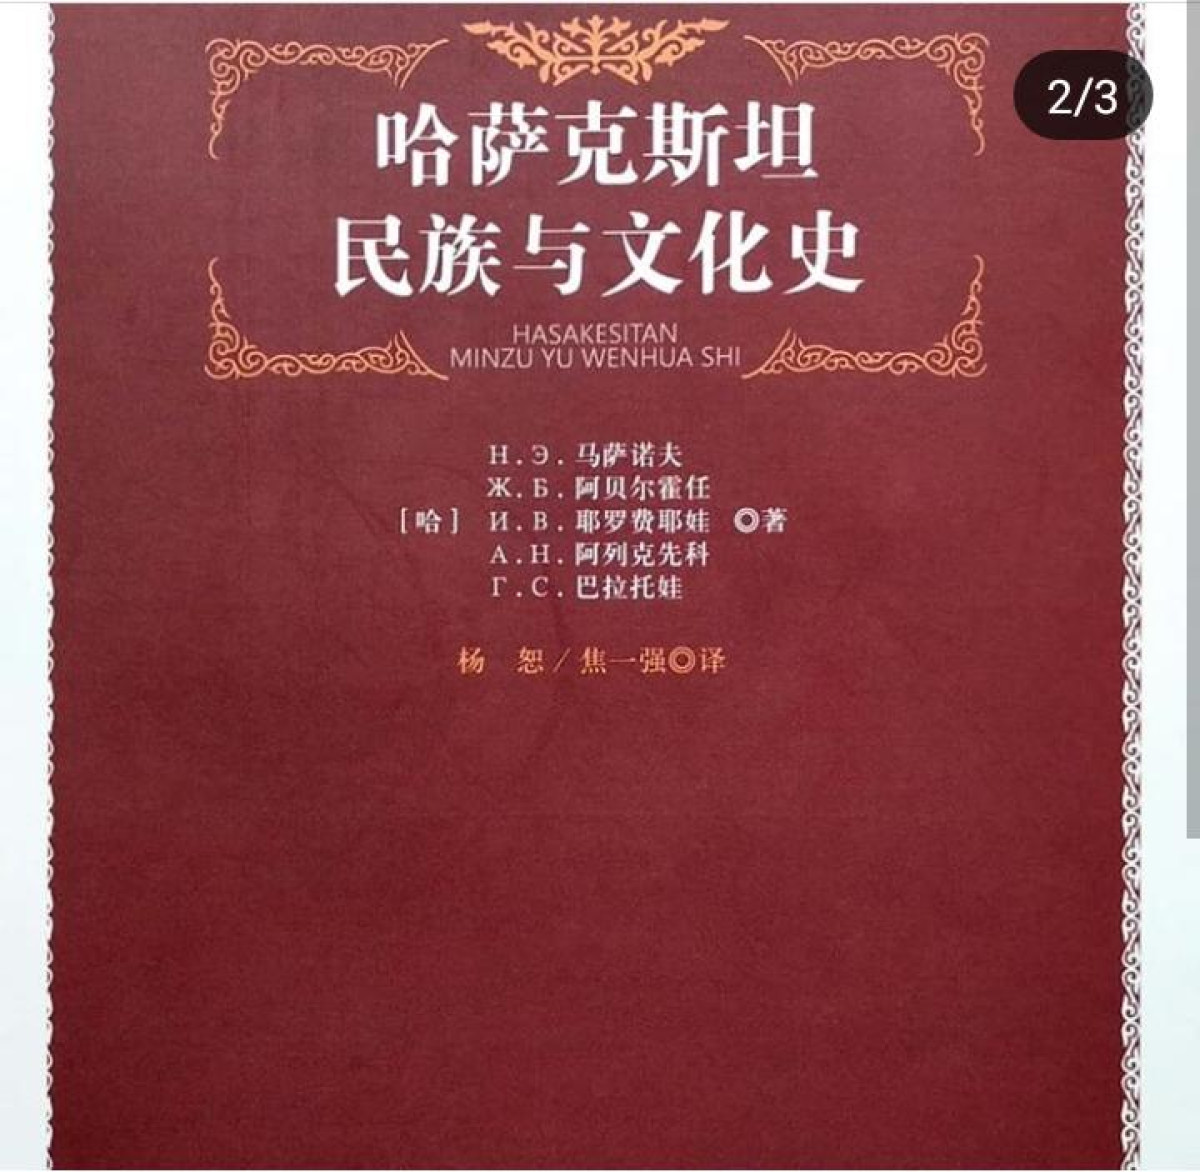 Қазақстанның халықтары мен мәдениеттері туралы кітап қытай тіліне аударылды